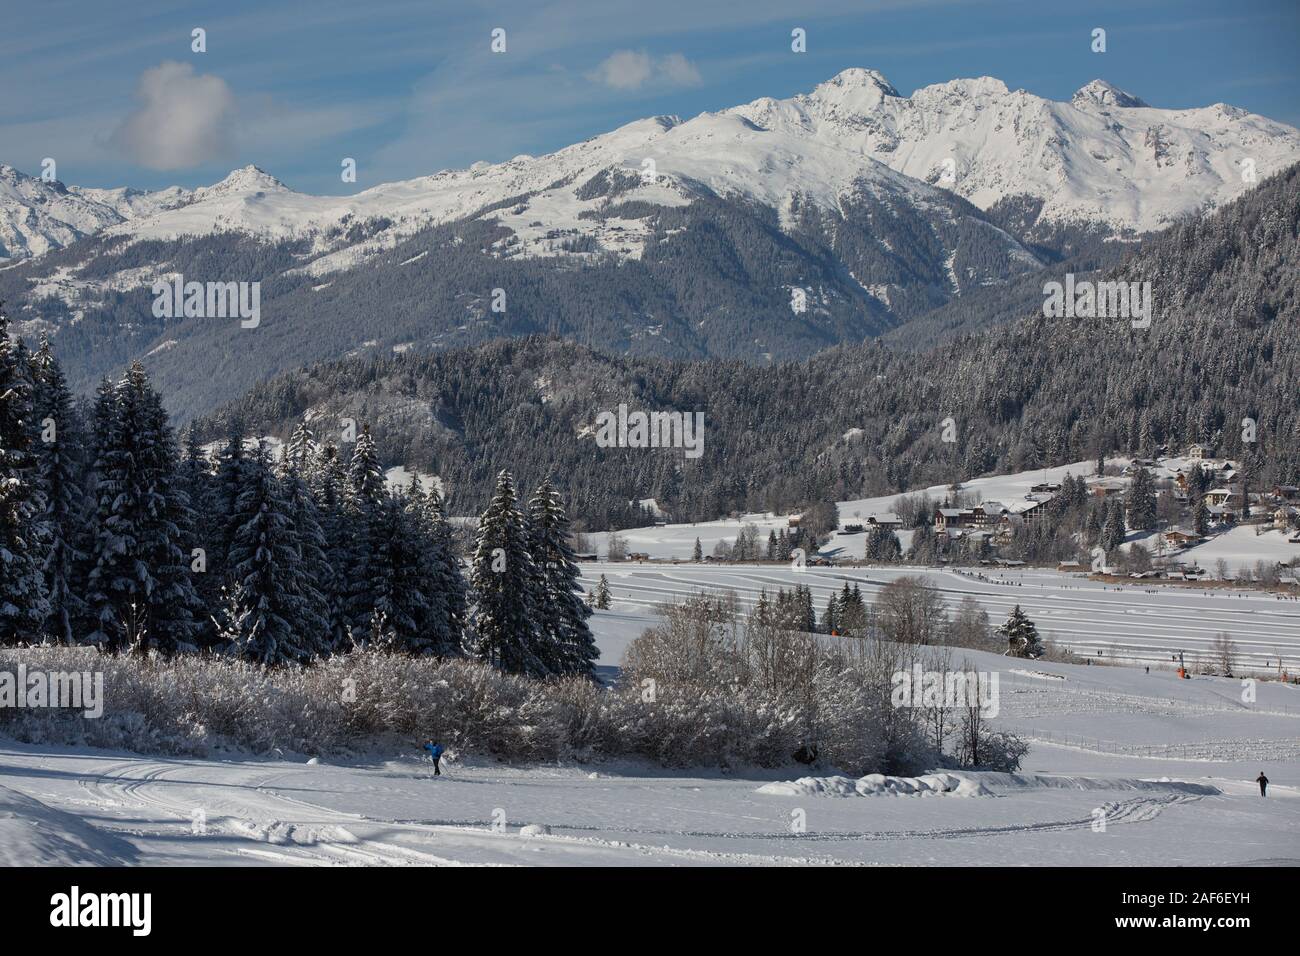 Lago congelado panorama con montañas cubiertas de nieve y bosques. La gente patinar y caminar sobre el lago congelado Weissensee, Carintia, Alpes, Austria Foto de stock